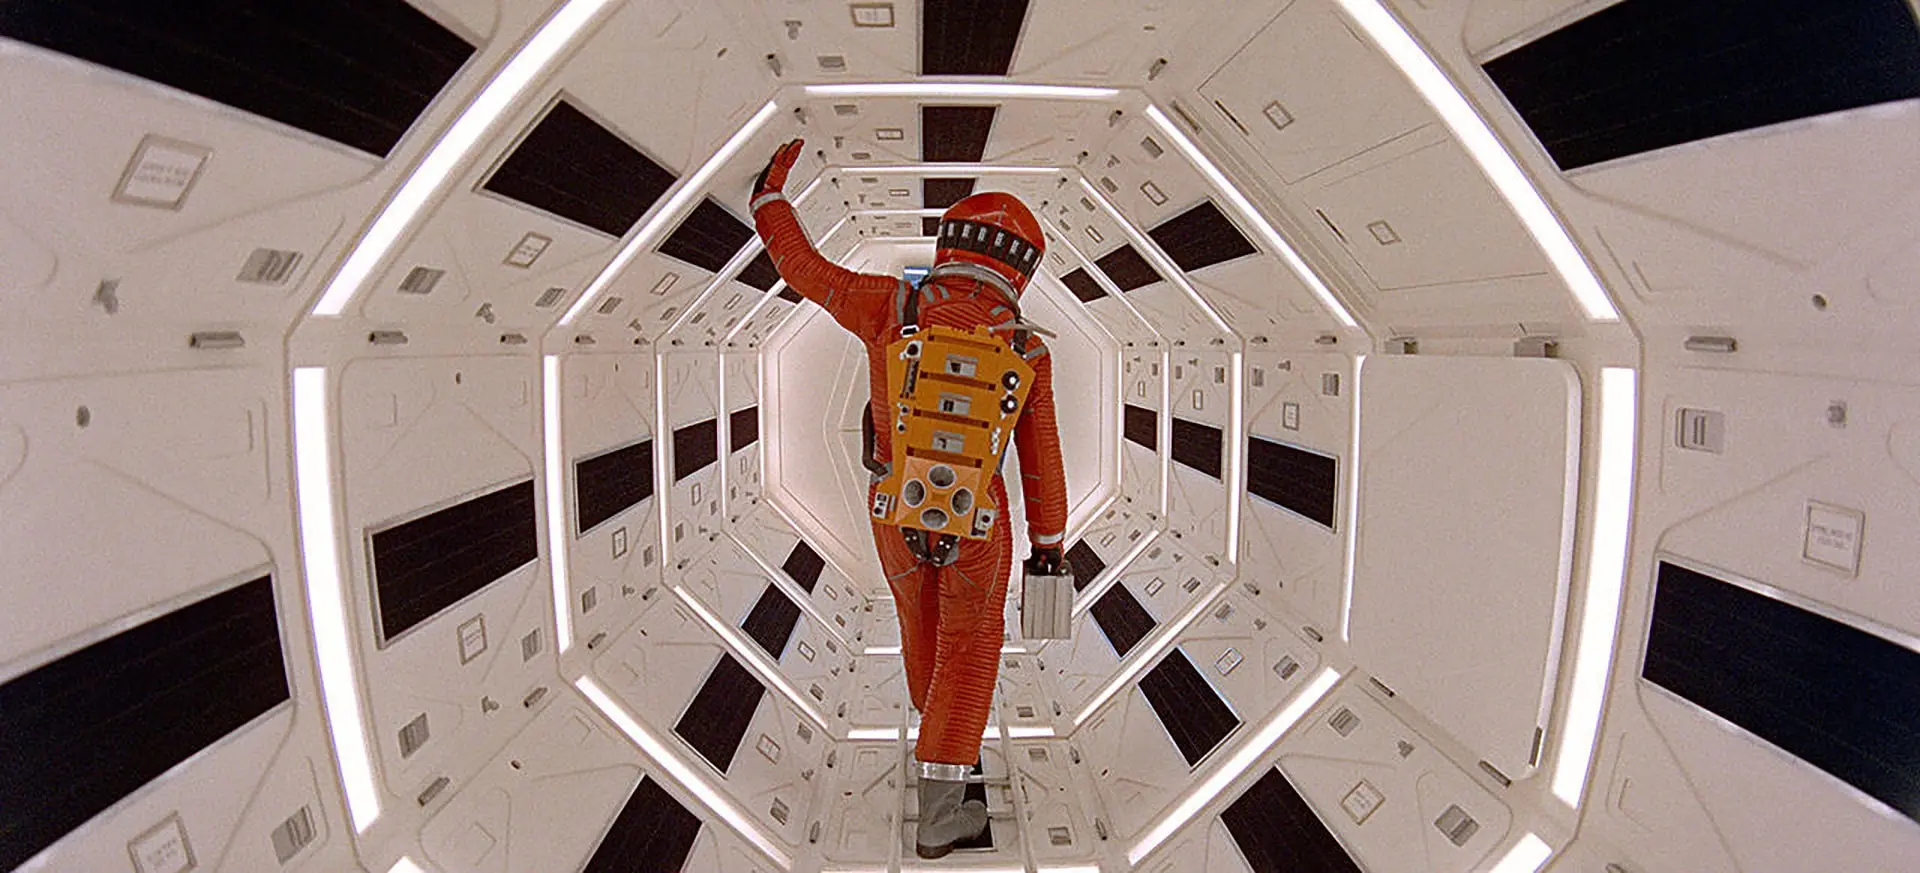 یک فضانورد در سفینه فیلم ۲۰۰۱ ادیسه ای فضایی از استنلی کوبریک